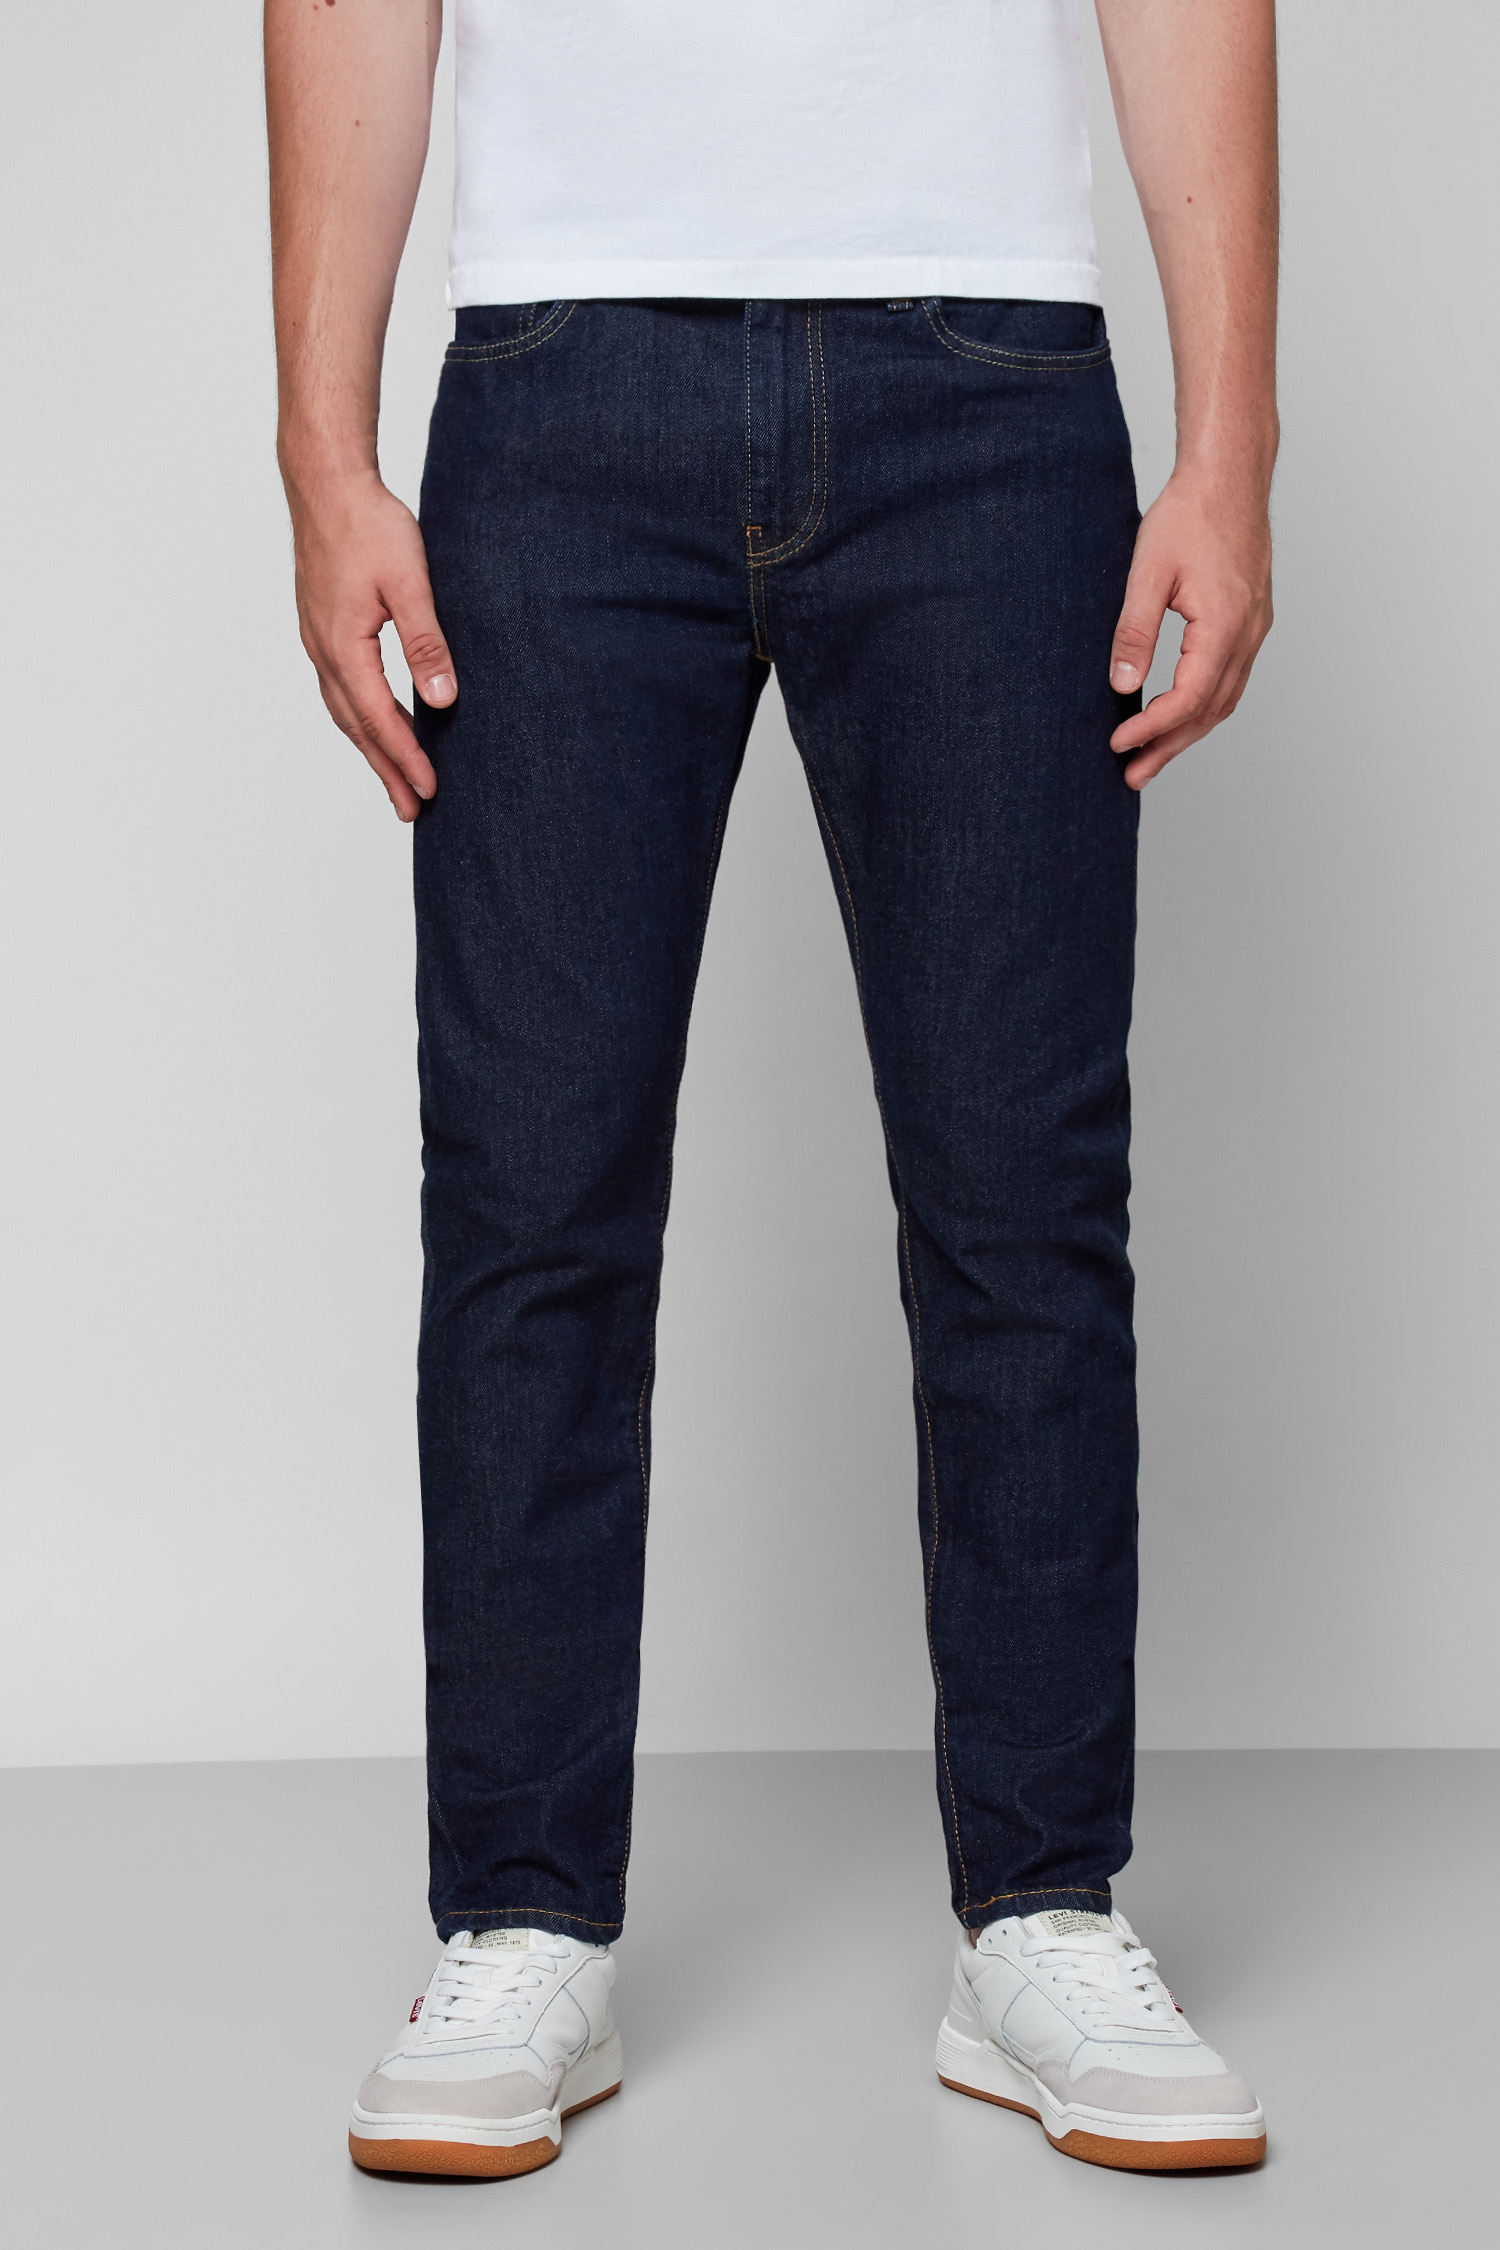 Темно-синие джинсы для парней 512™ Slim Taper Levi’s® 28833;0280